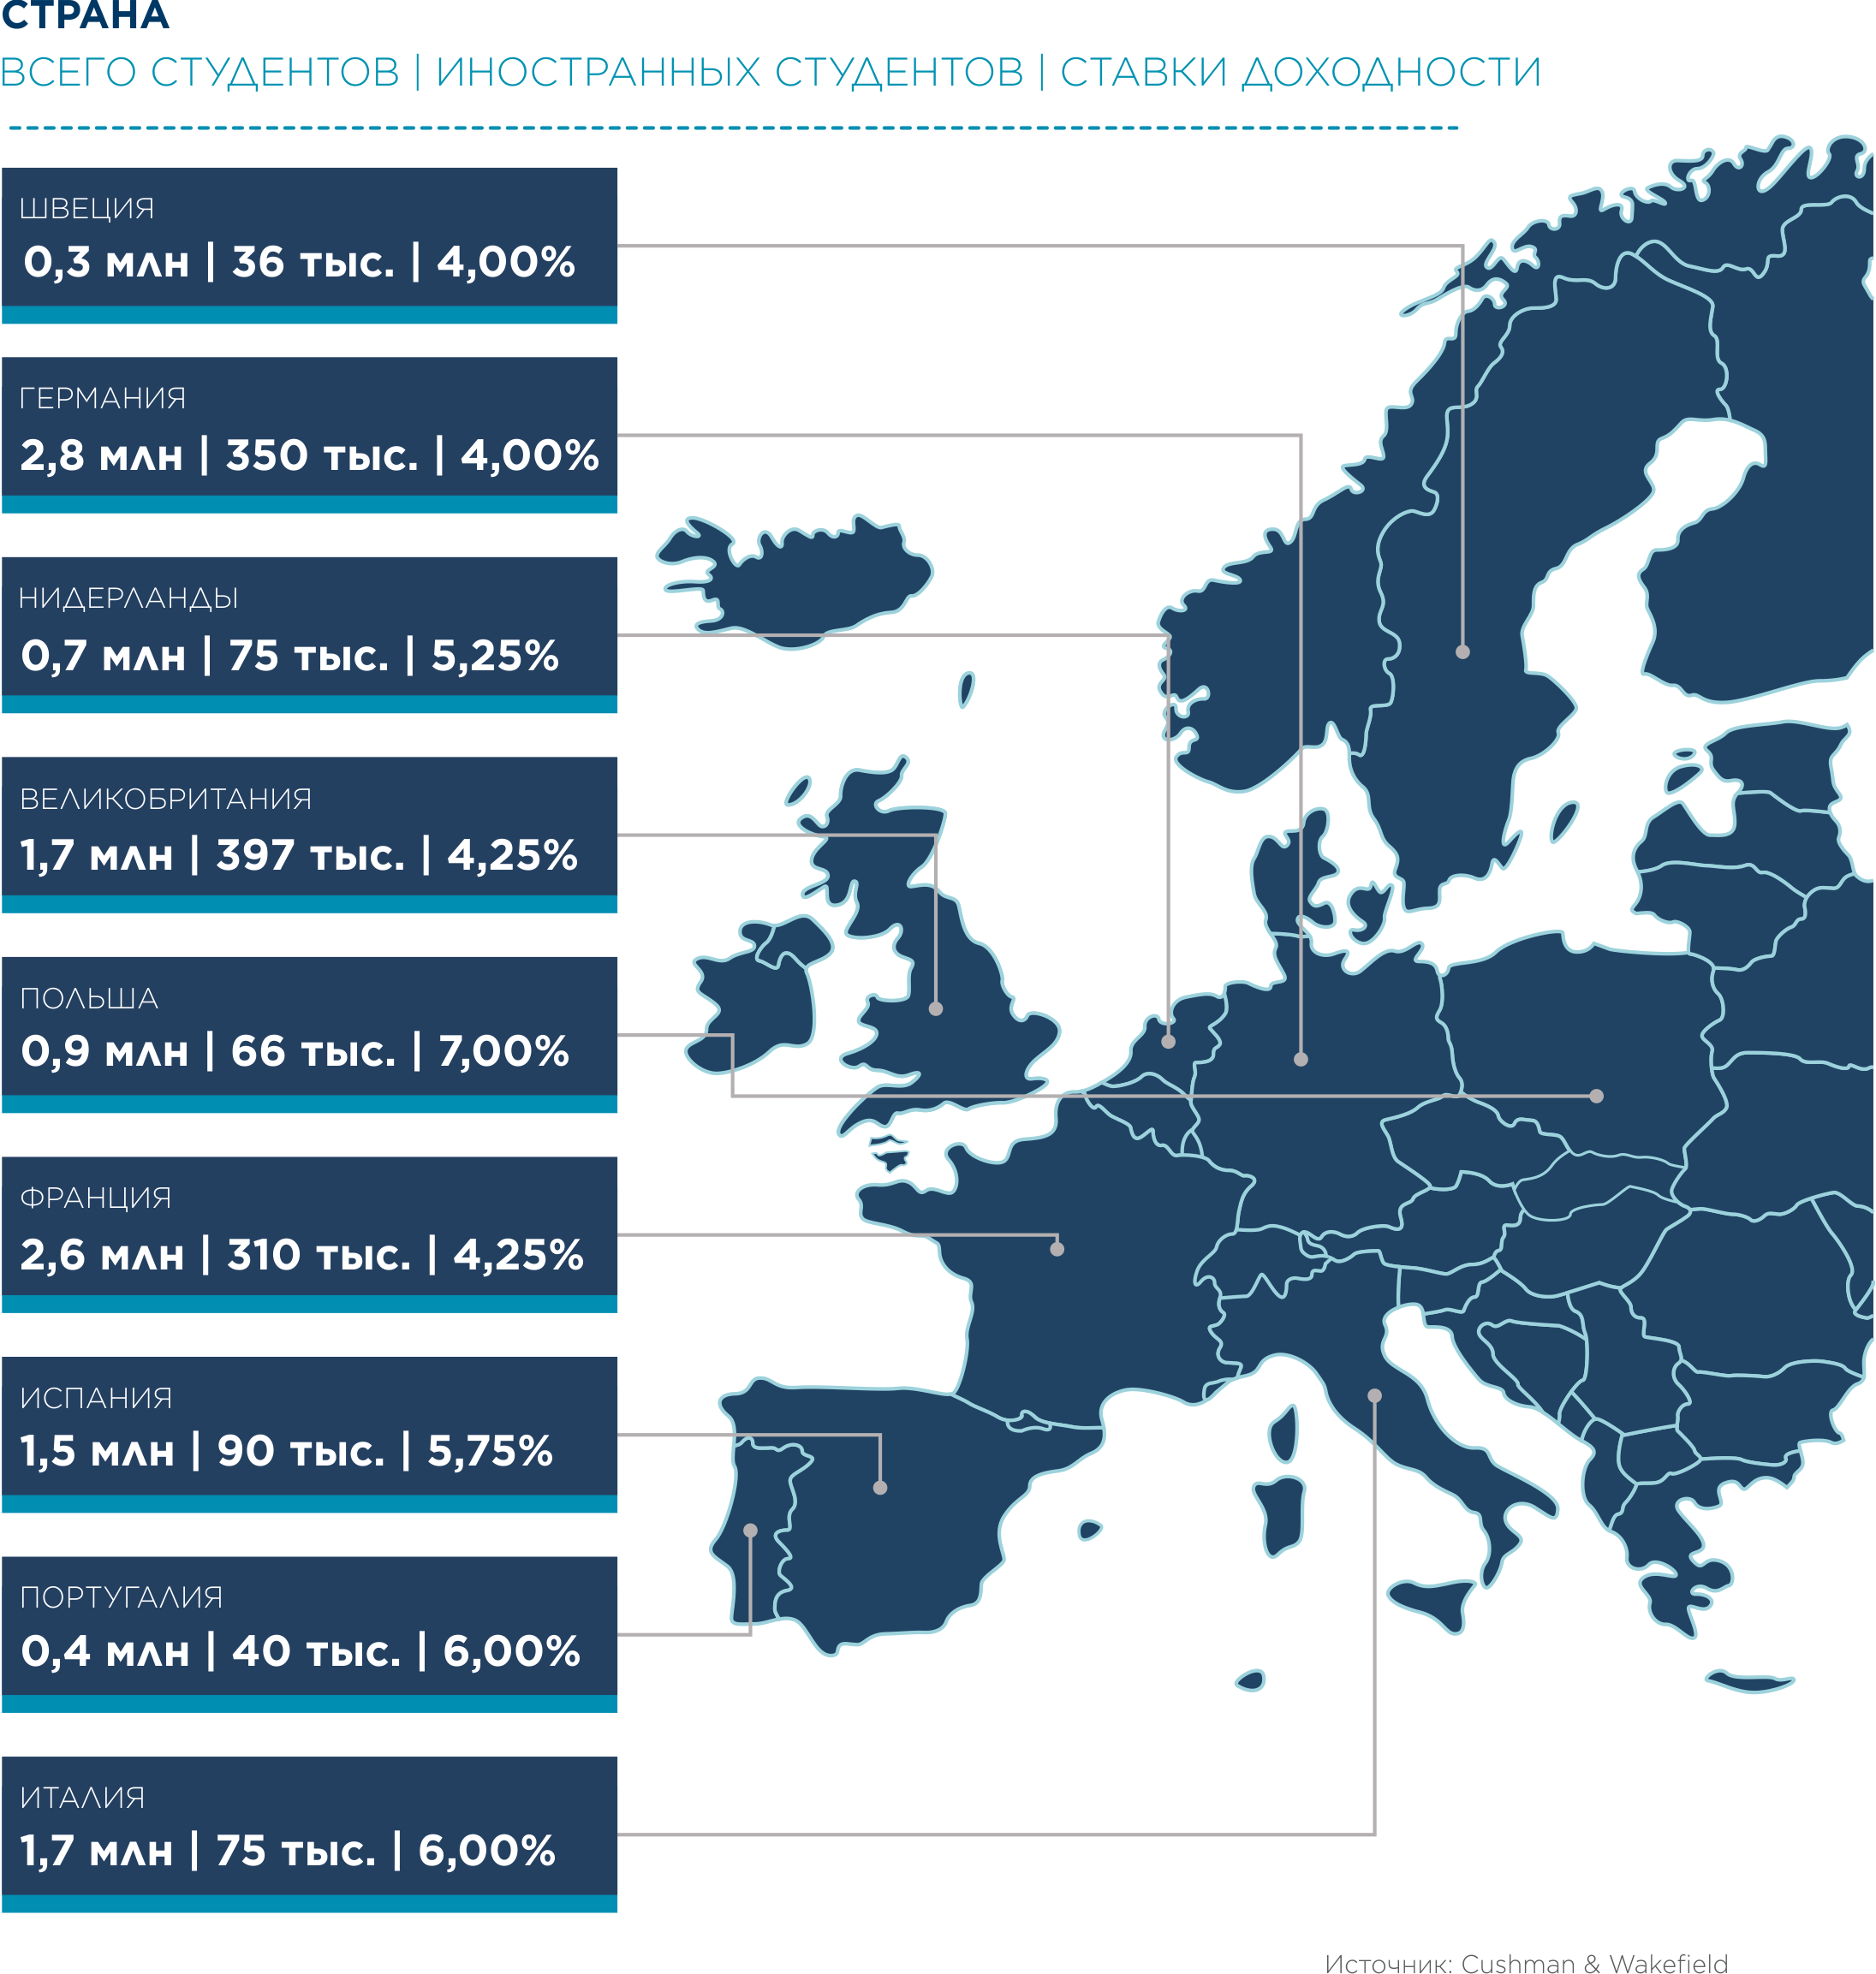 Инвестиционная привлекательность сектора студенческих общежитий - Европа